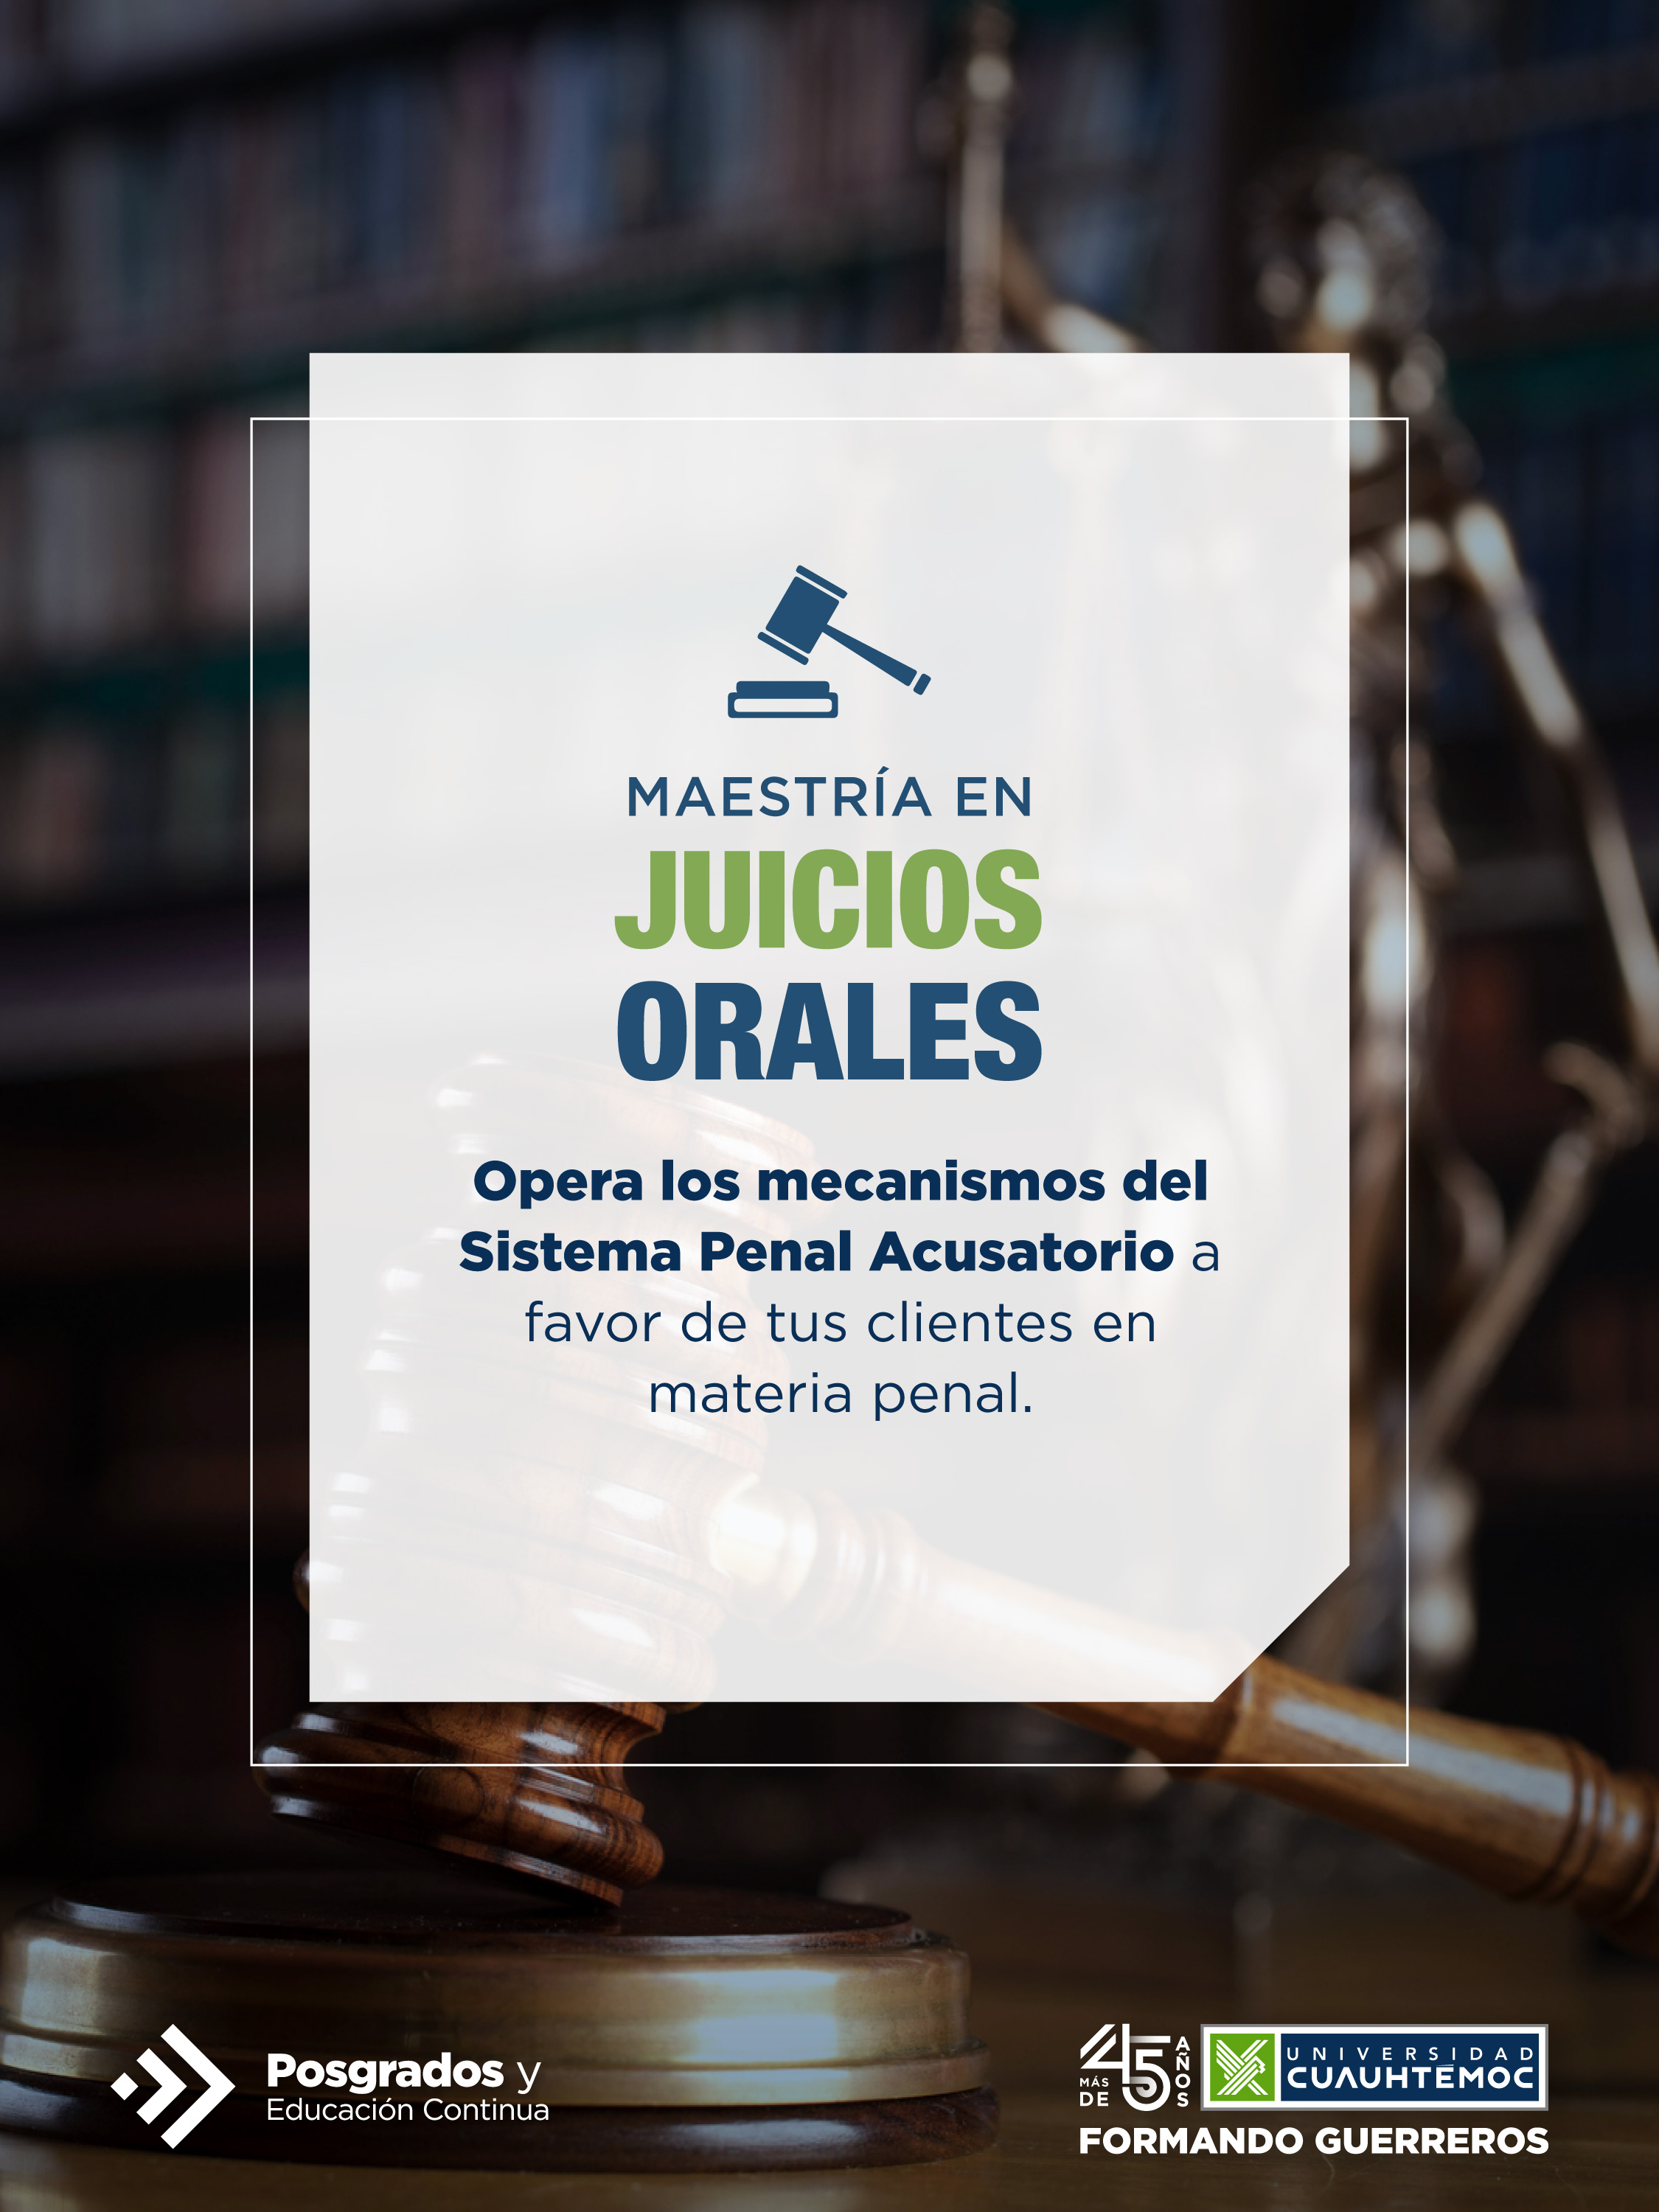 El objetivo de la Maestria en Juicios Orales de la Universidad Cuauhtémoc te animará a querer ser parte de este programa.